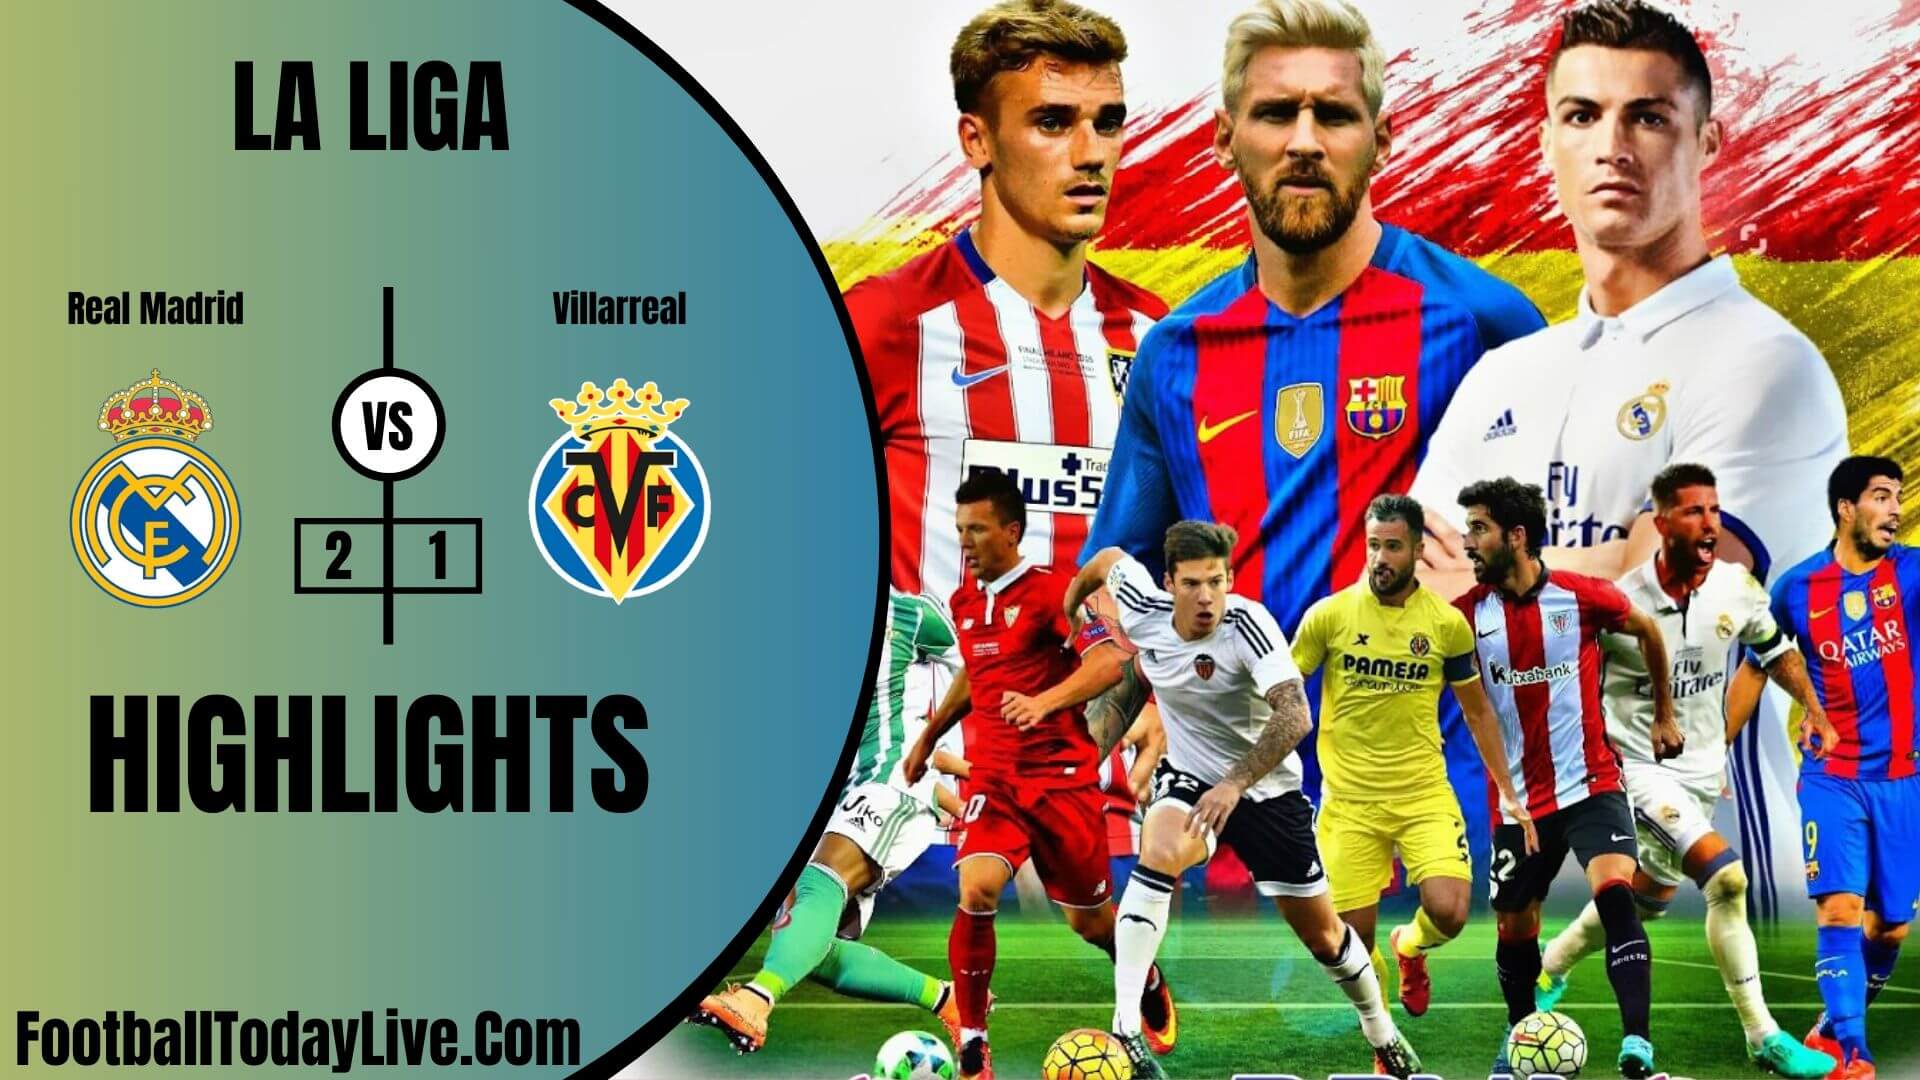 Real Madrid Vs Villarreal Highlights 2020 La Liga Week 37